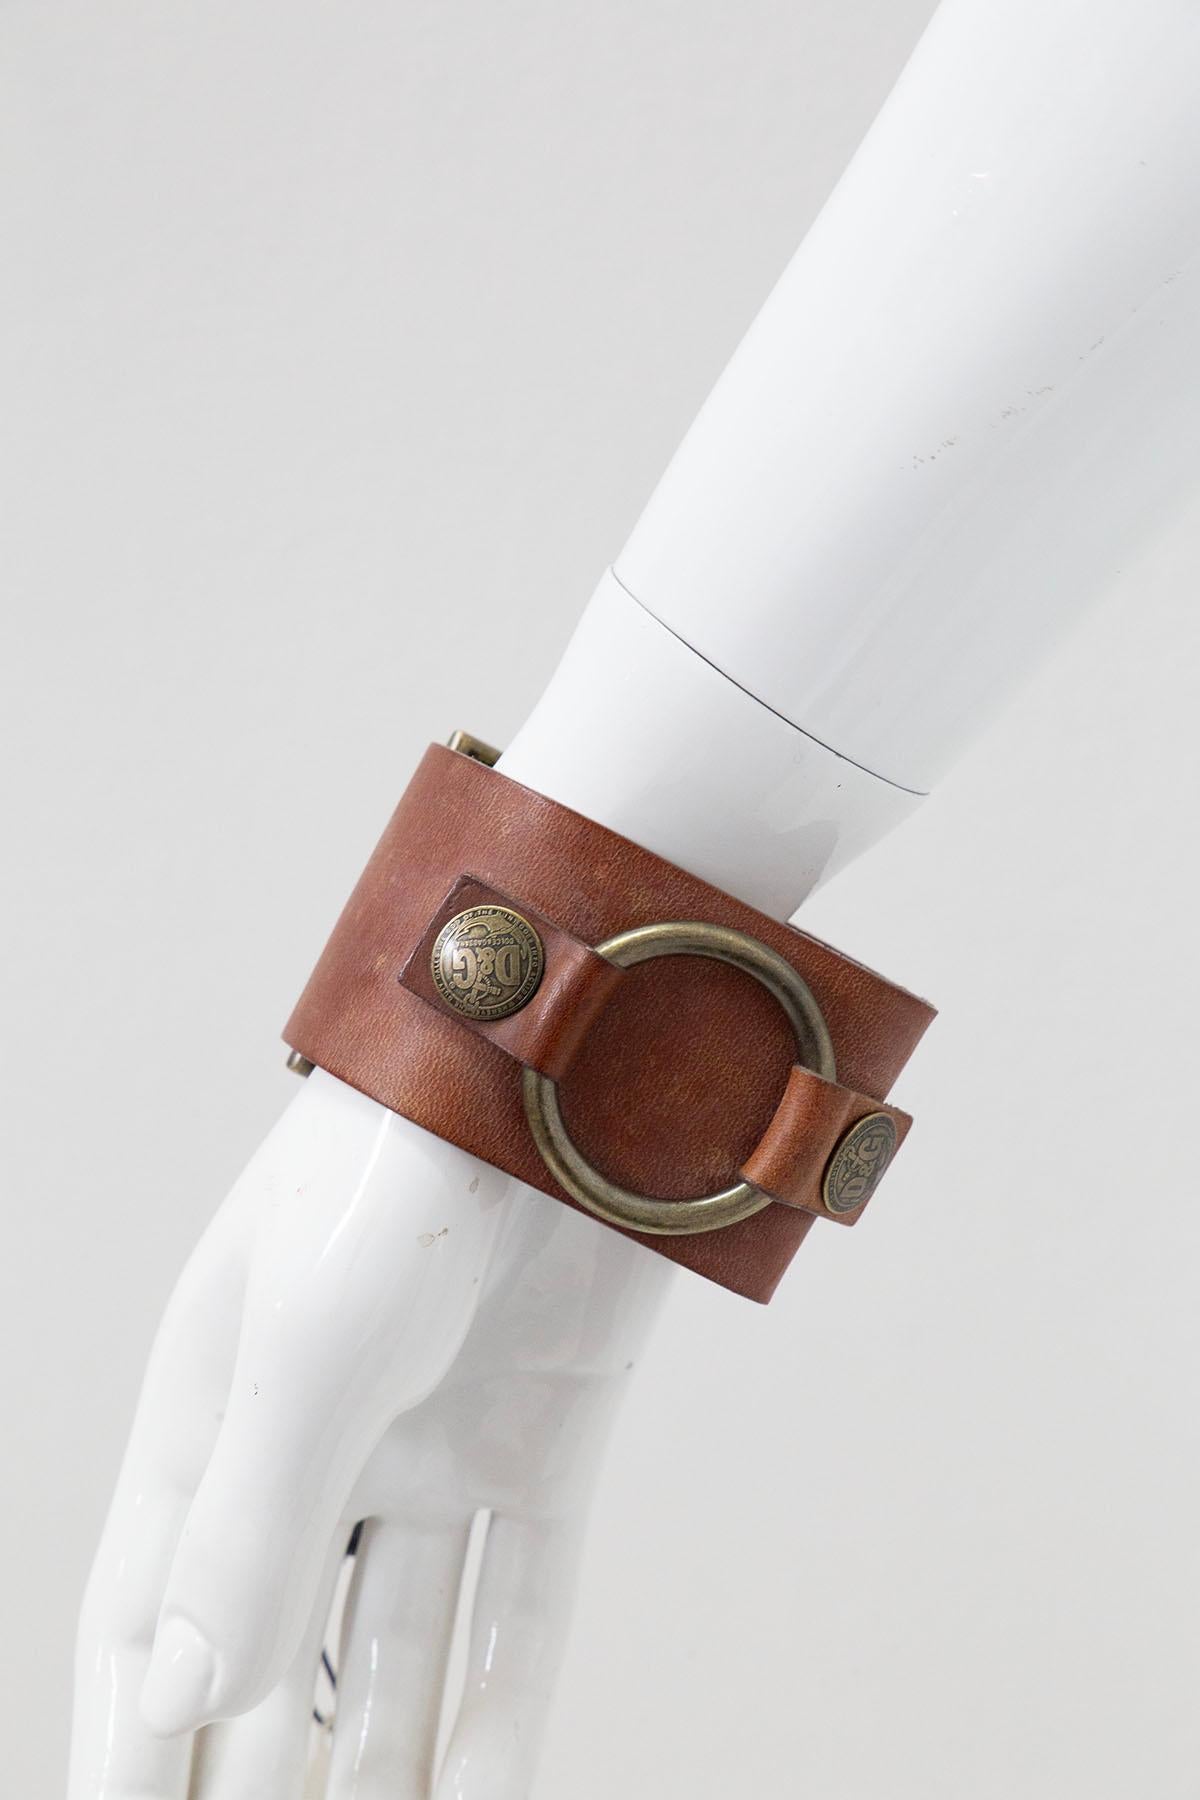 Magnifique bracelet réglable en cuir conçu par Dolce&Gabbana dans les années 1990, avec le nom de la marque en relief.
Le bracelet a une structure assez épaisse, impossible à manquer. Il est entièrement réalisé en beau cuir, dans sa couleur